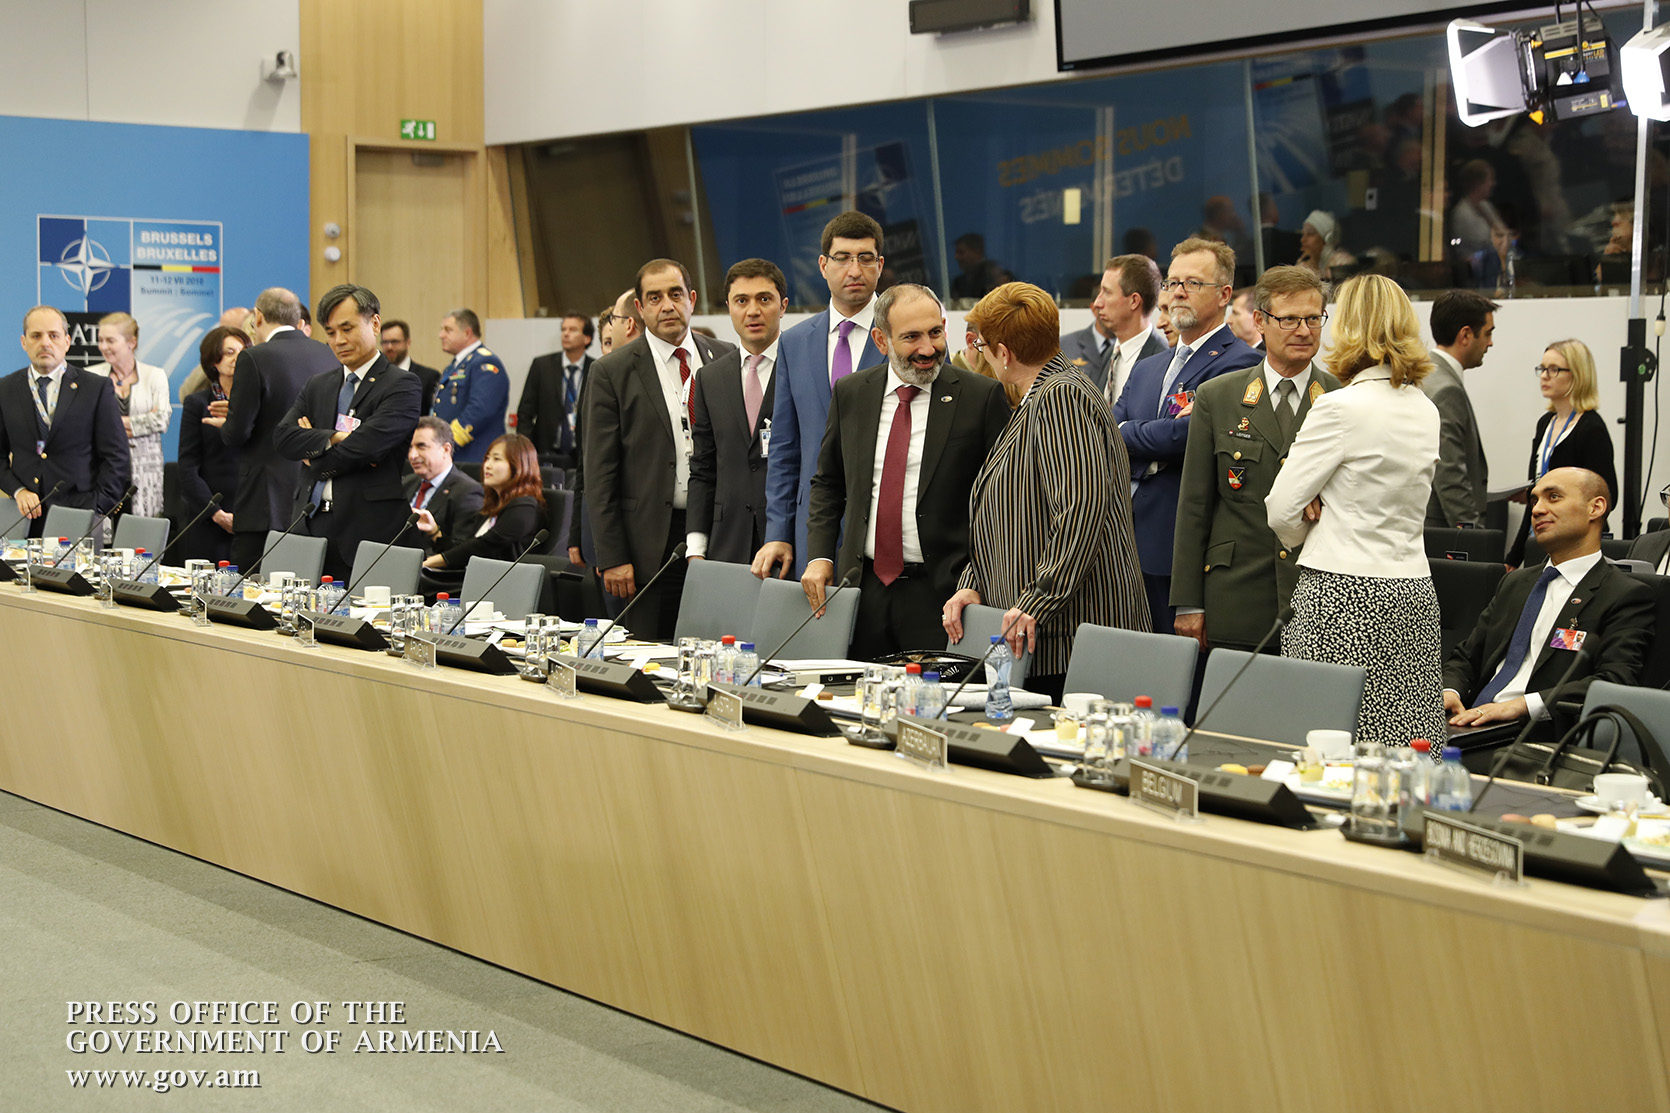 Выступление премьер-министра Никола Пашиняна на встрече глав государств и правительств стран-членов НАТО и партнеров миссии в Афганистане «Решительная поддержка»